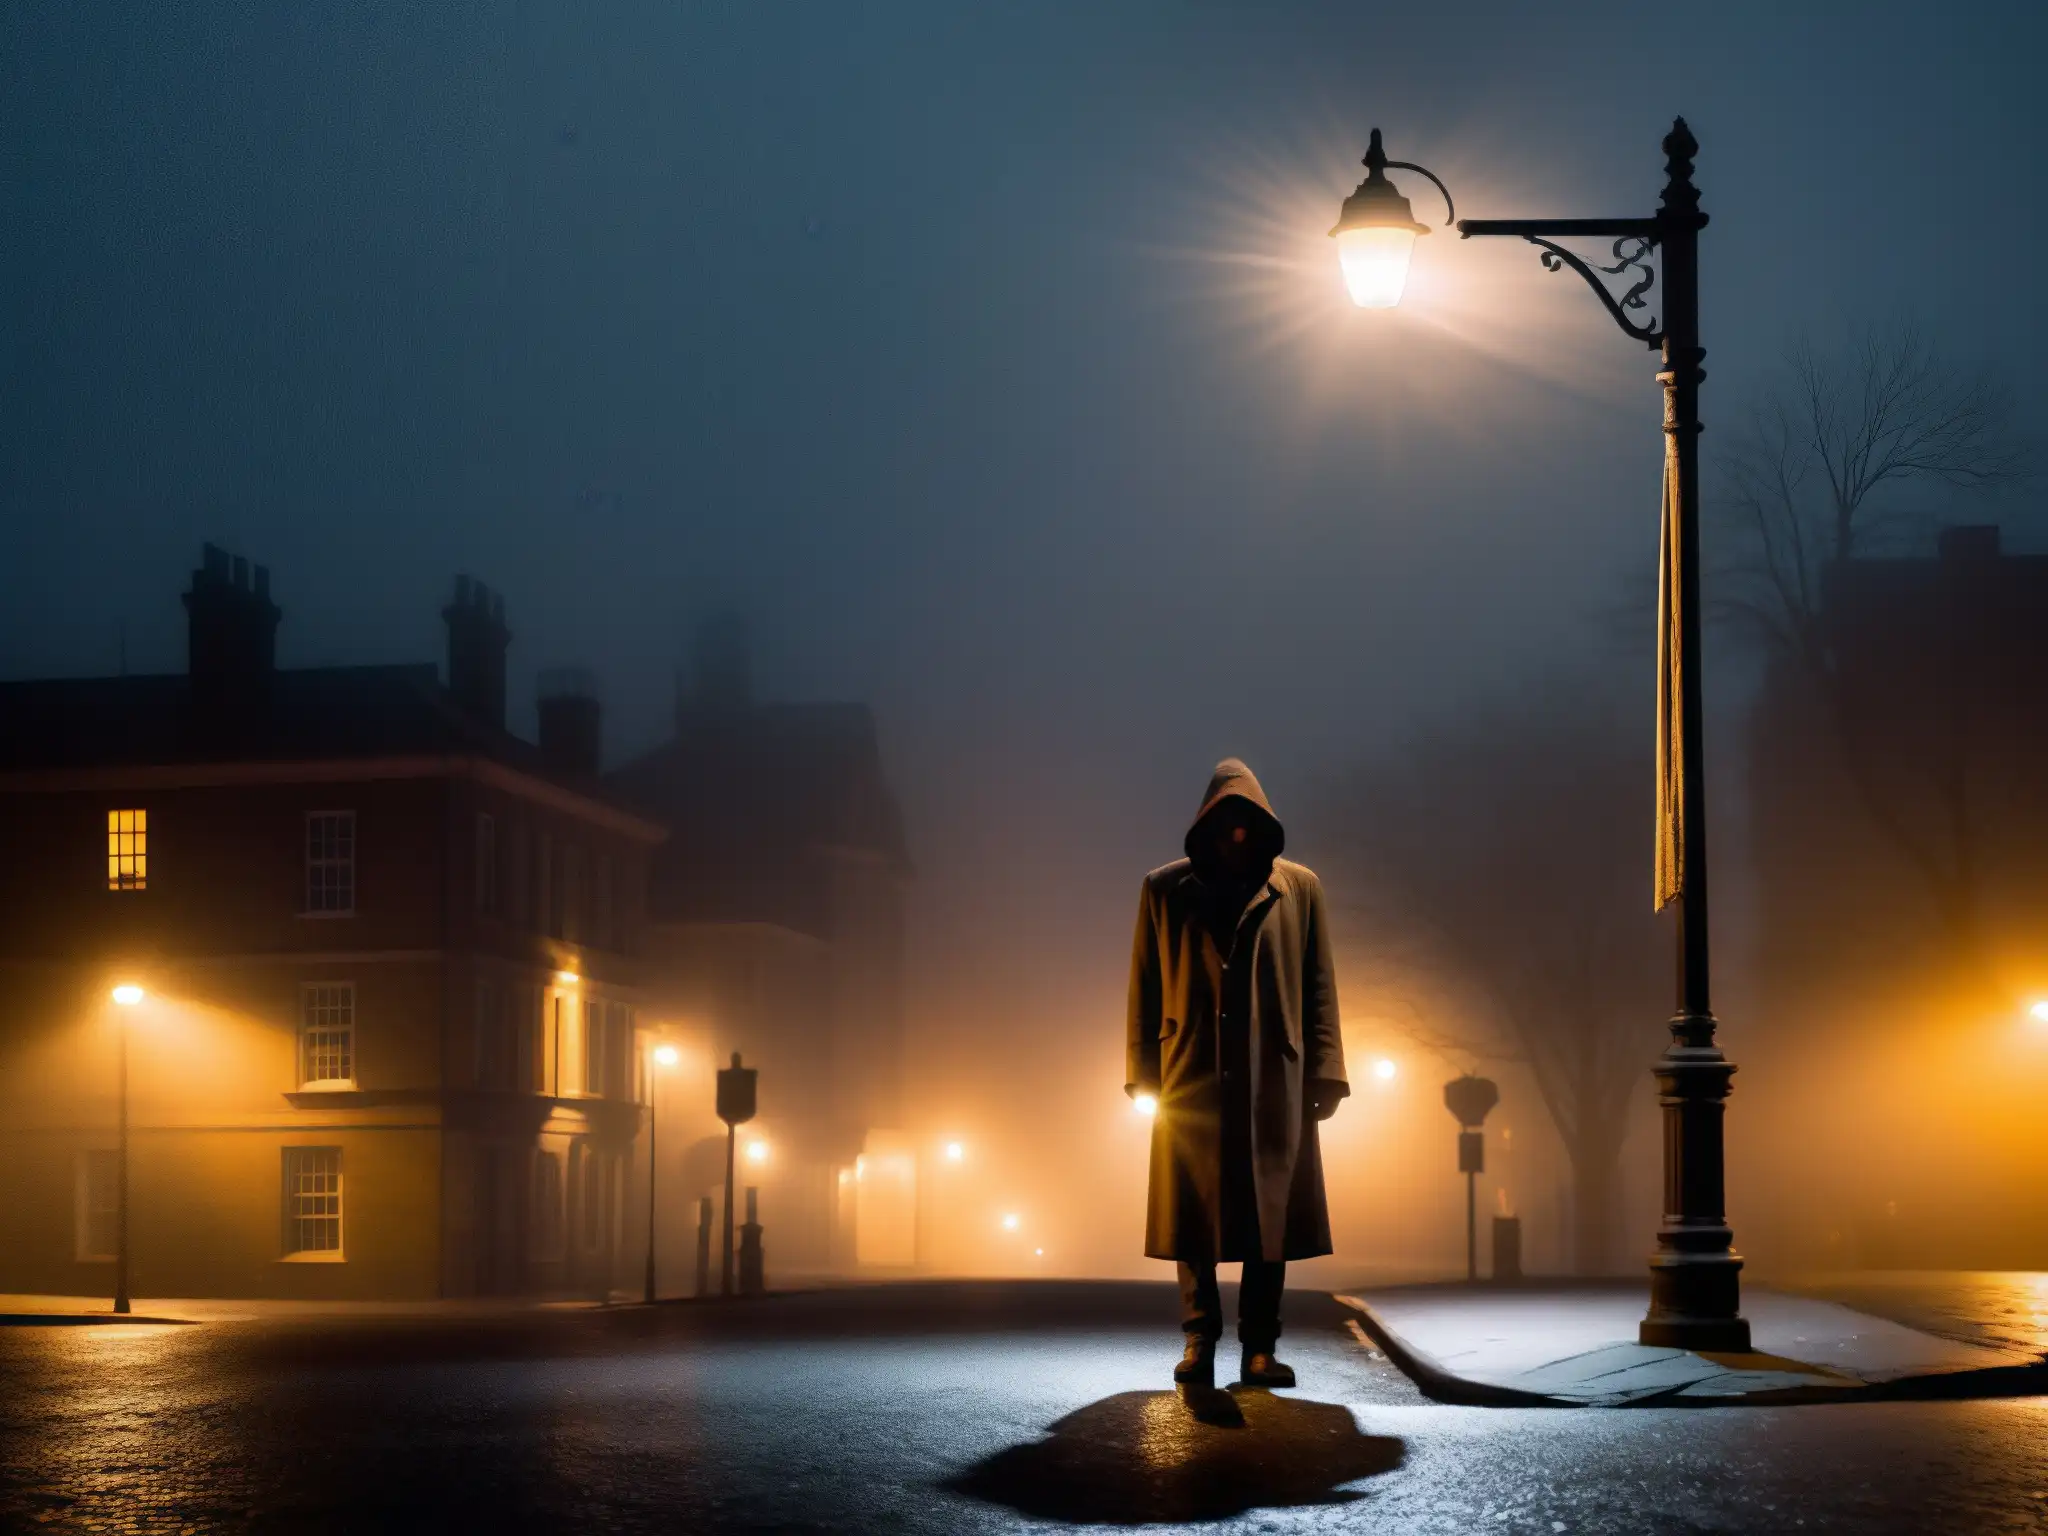 En la esquina de la calle, una figura misteriosa envuelta en niebla bajo la luz de un farol